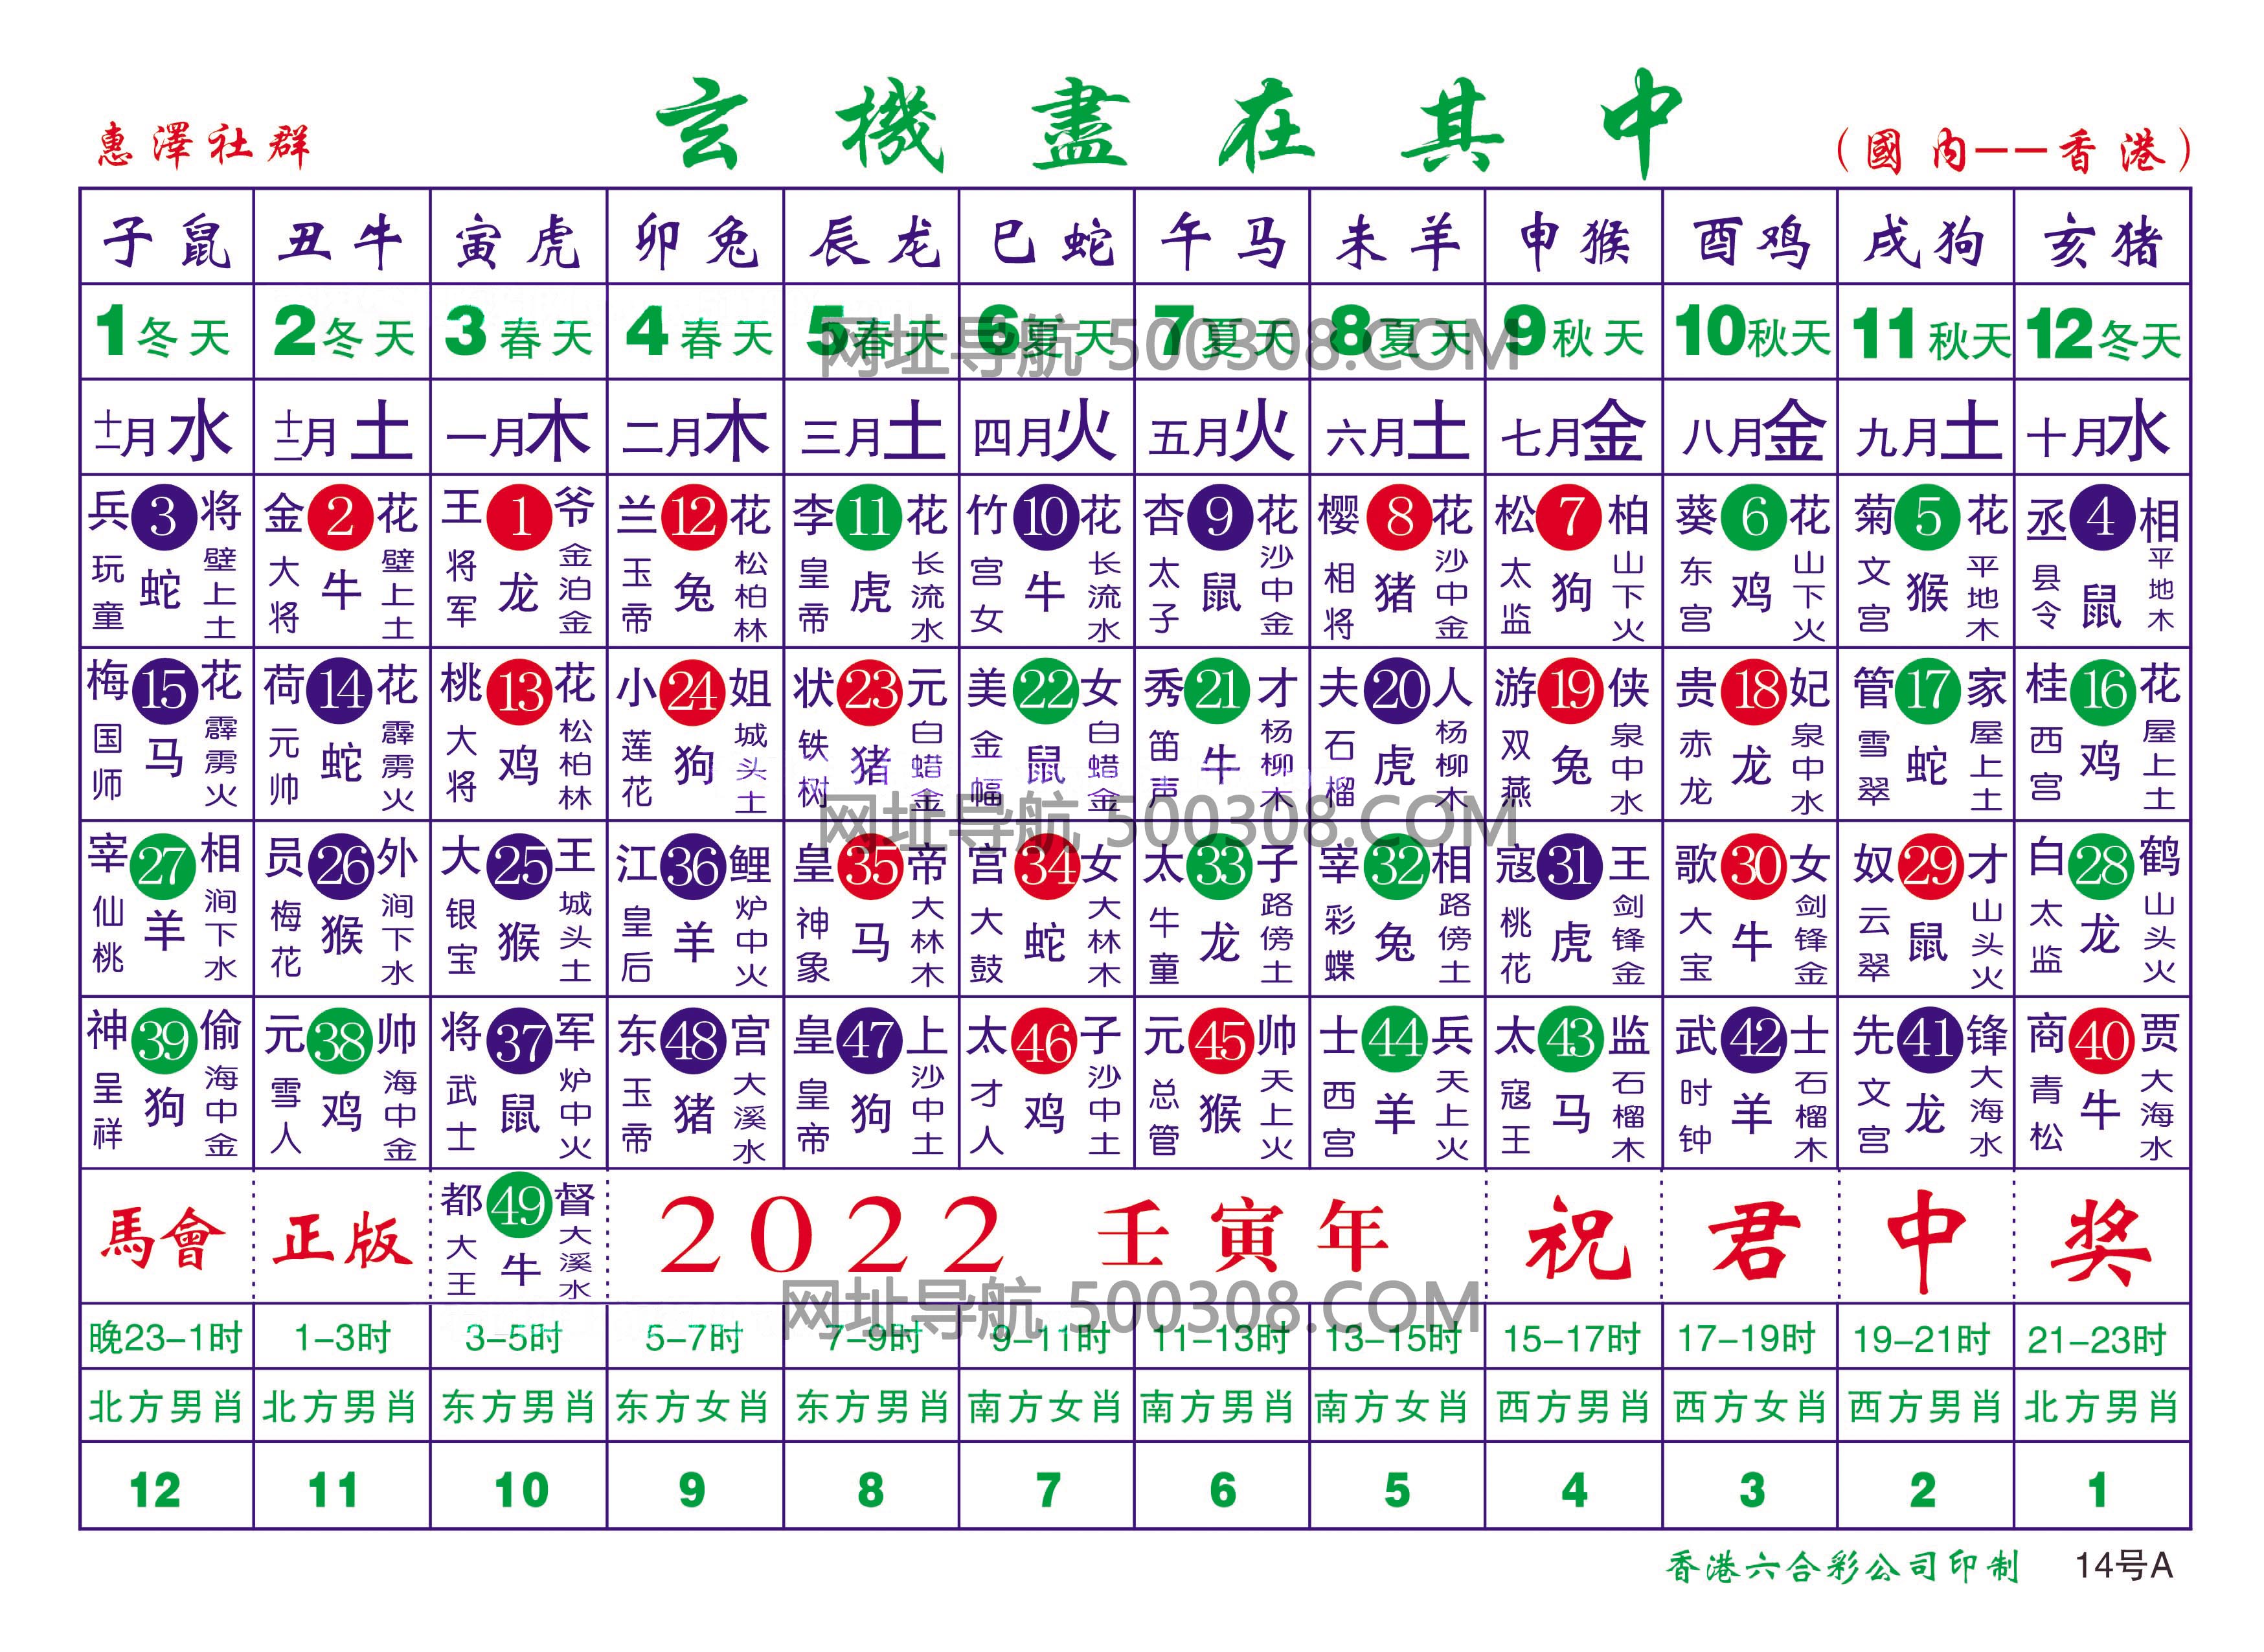 →→→2022年生肖波色表←←←